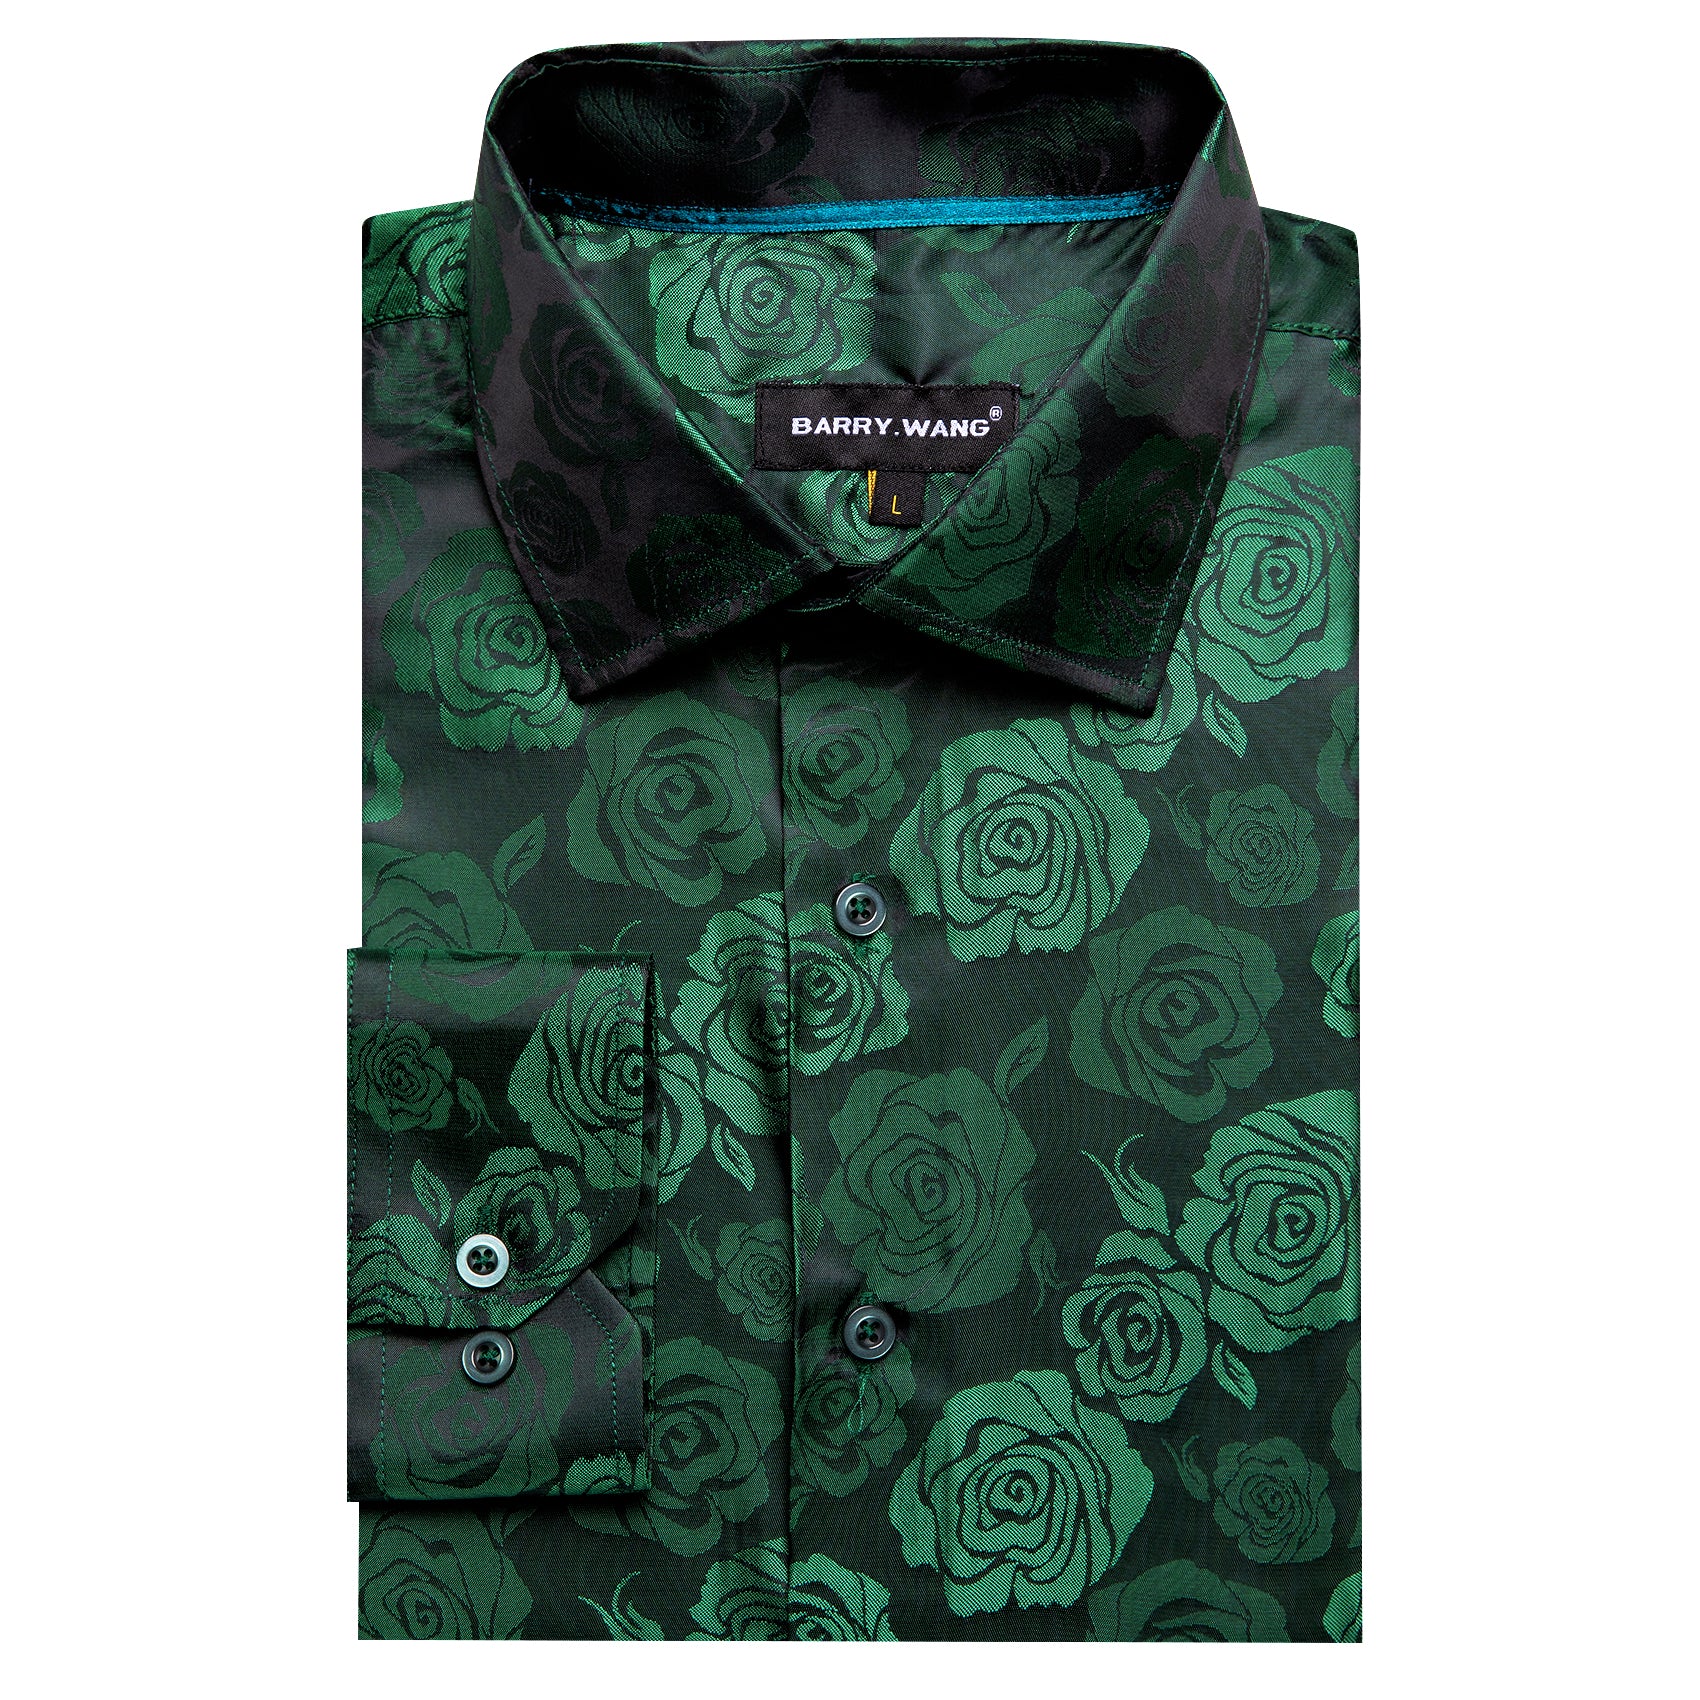 Barry.wang Green Print Flower Silk Men's Shirt